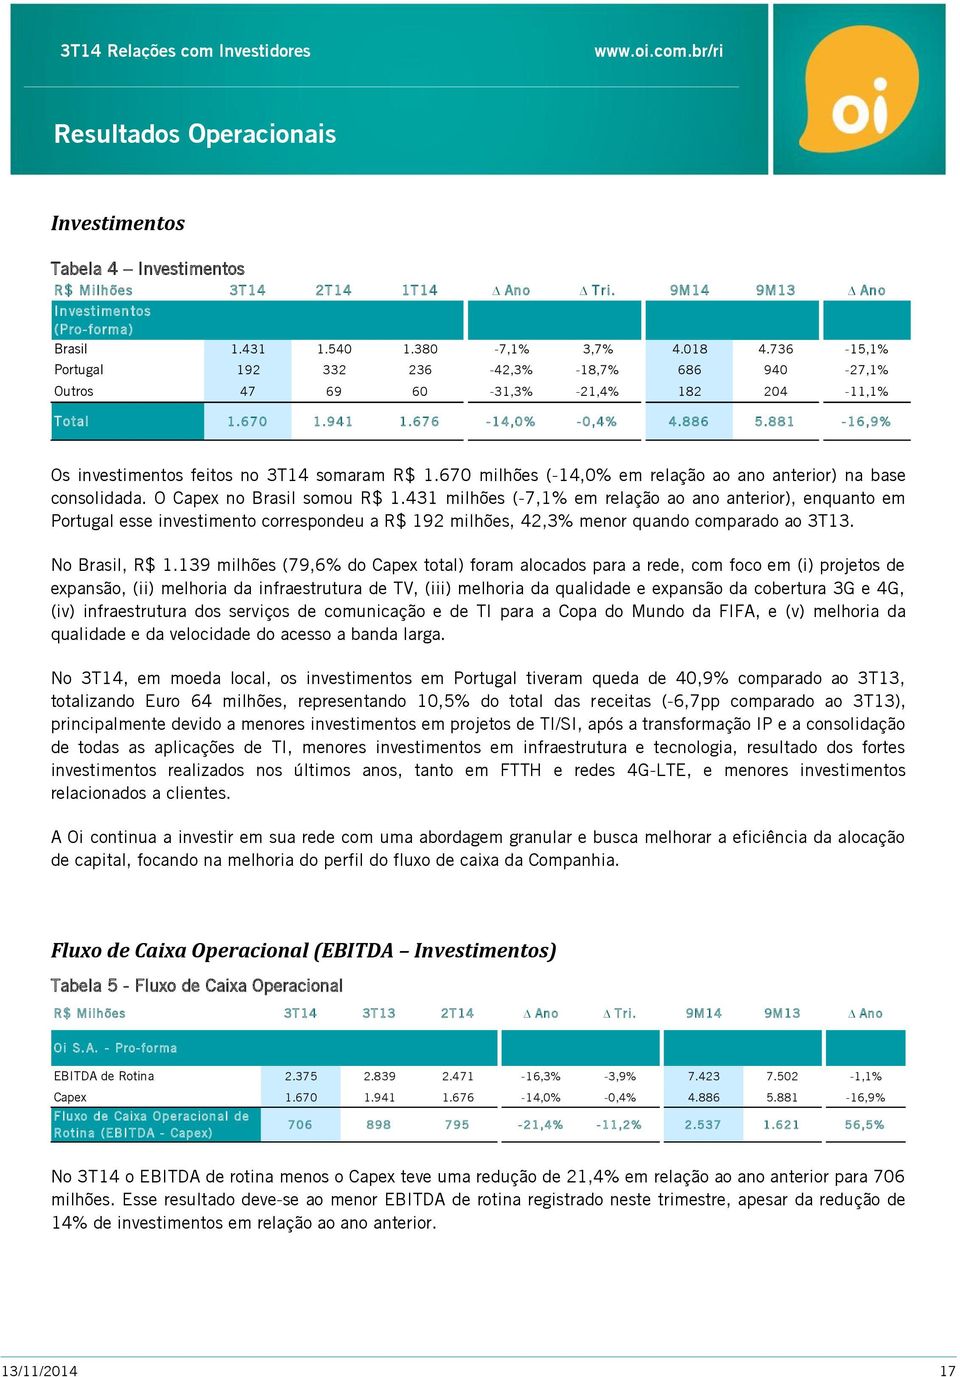 881-16,9% Os investimentos feitos no 3T14 somaram R$ 1.670 milhões (-14,0% em relação ao ano anterior) na base consolidada. O Capex no Brasil somou R$ 1.